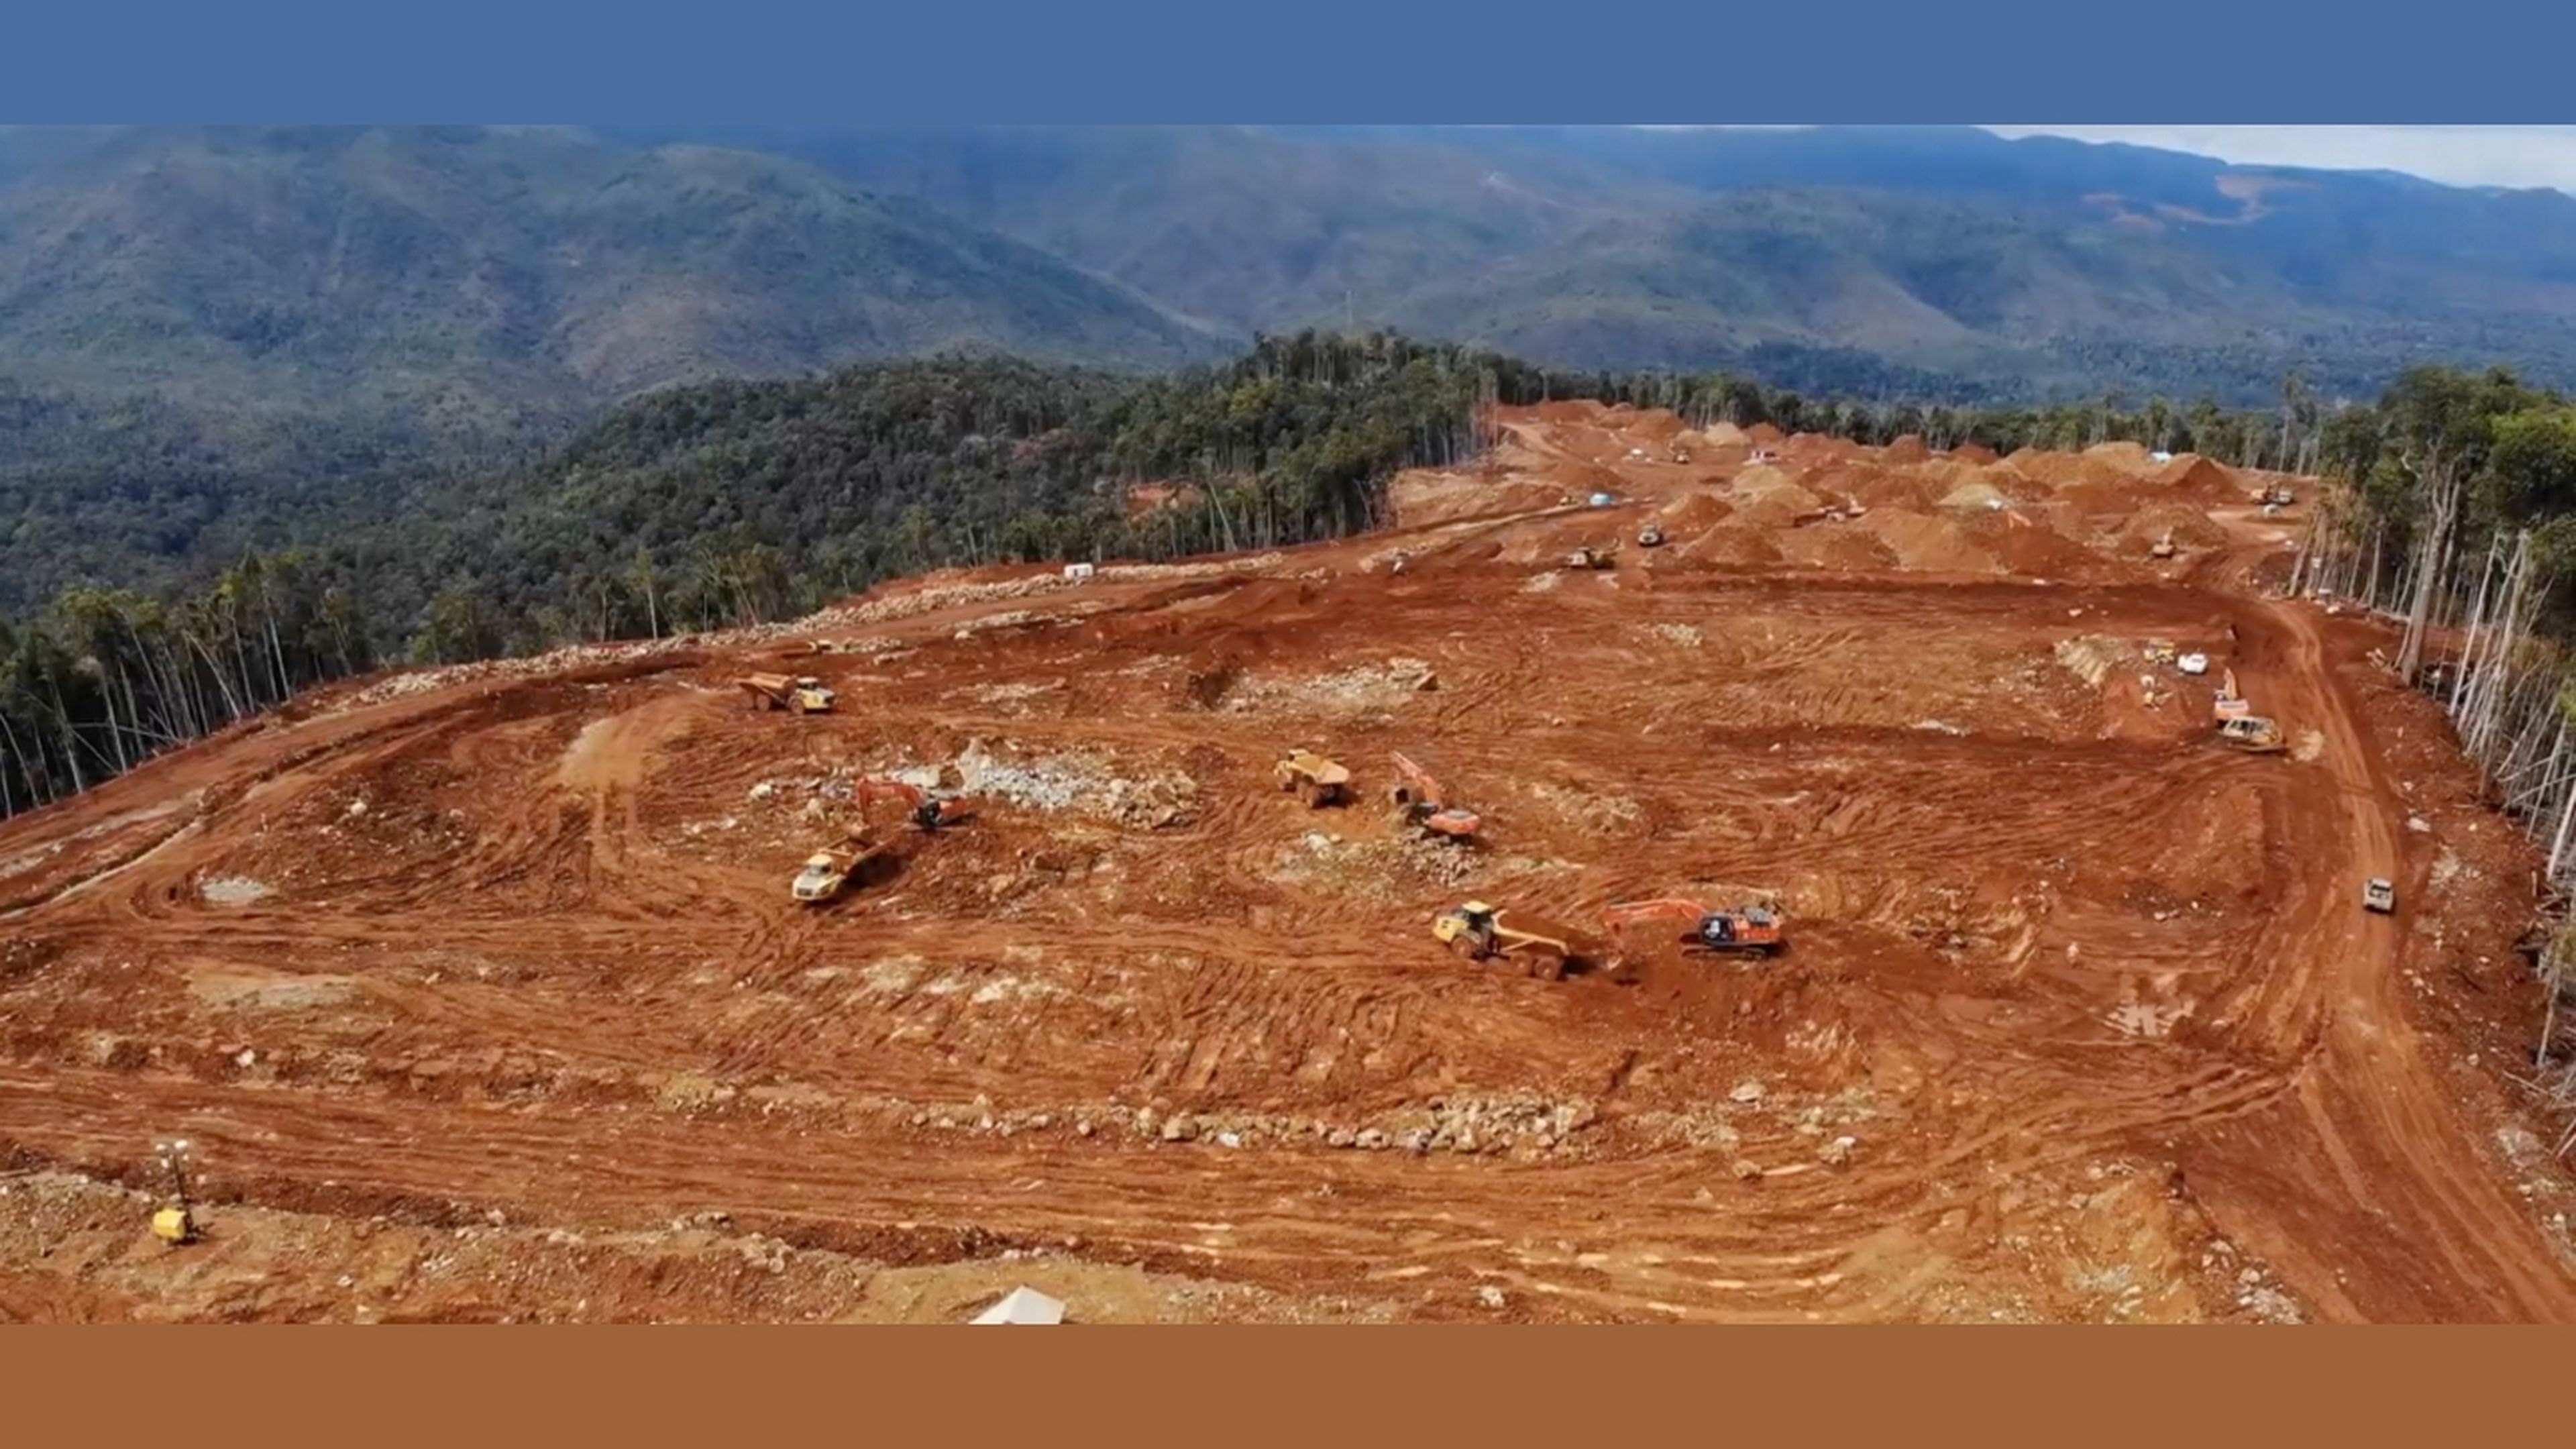 Un desgarrador vídeo muestra a una tribu no contactada enfrentándose a un bulldozer que destruye su bosque